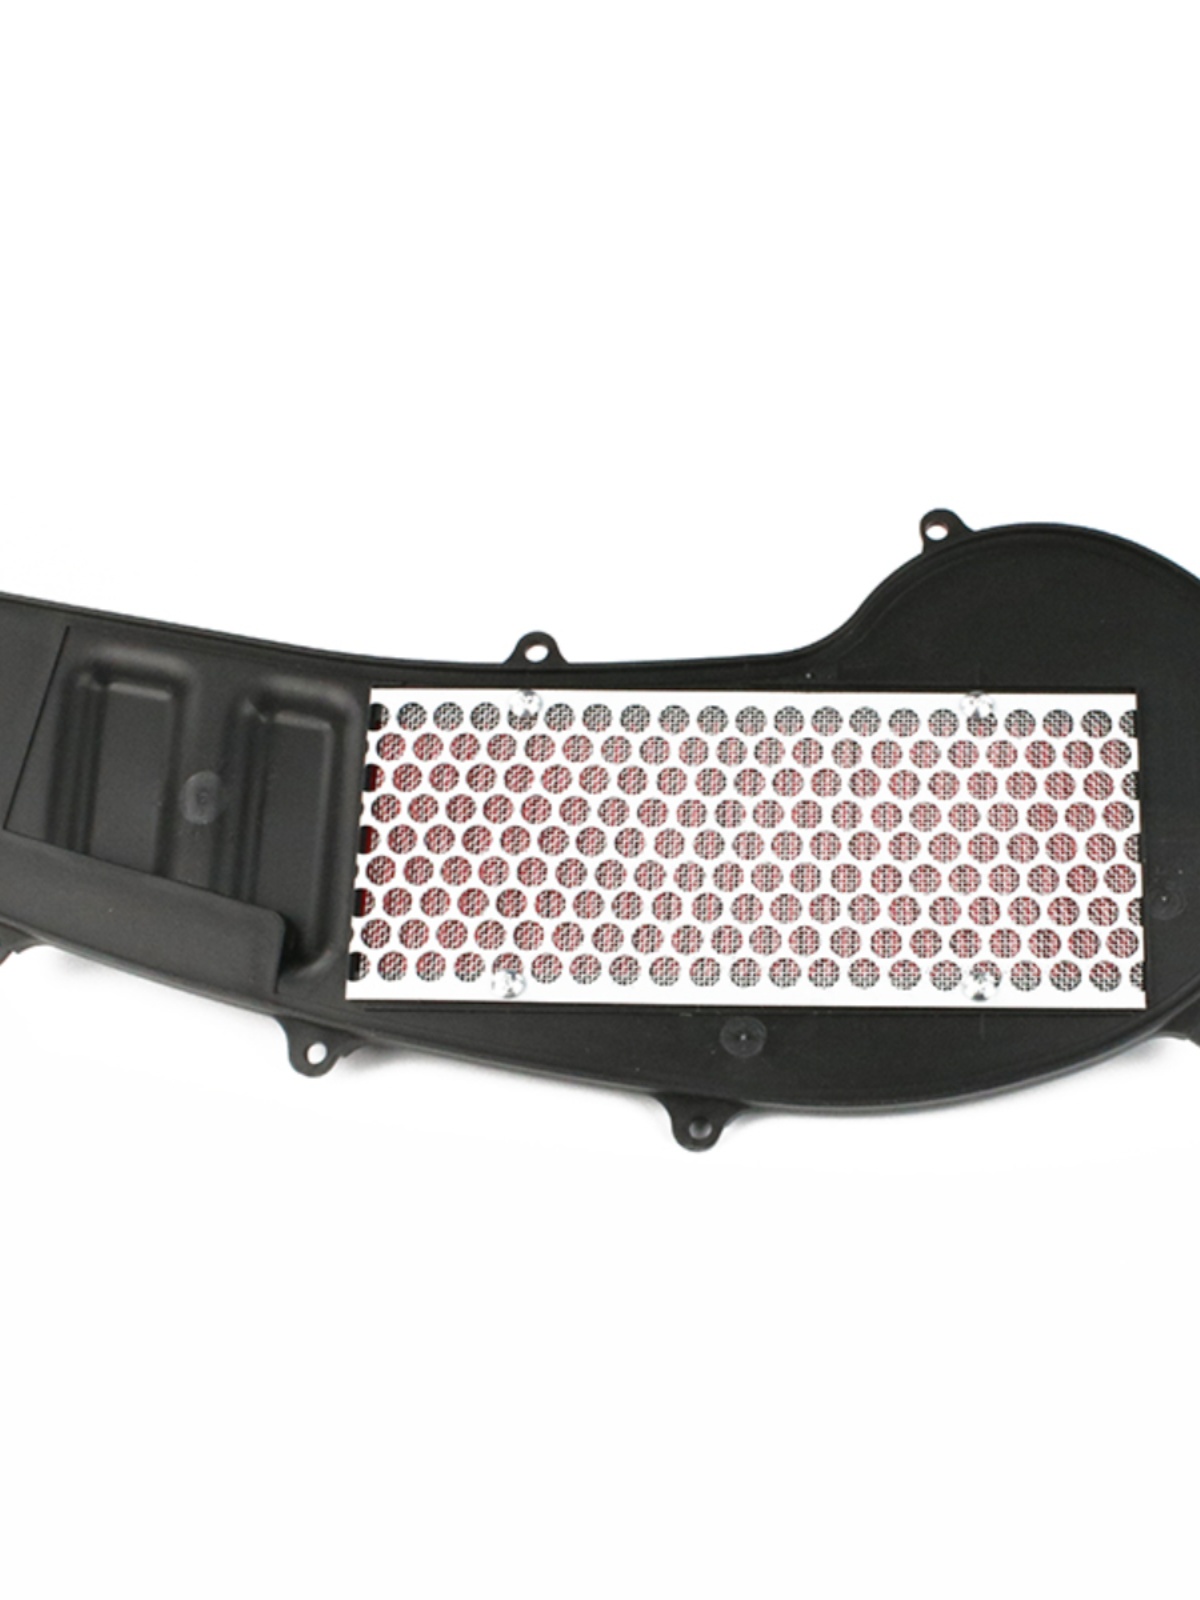 豪杰踏板摩托车VR125 HJ125T-19 HJ150T-19A空气滤芯滤清器空气格